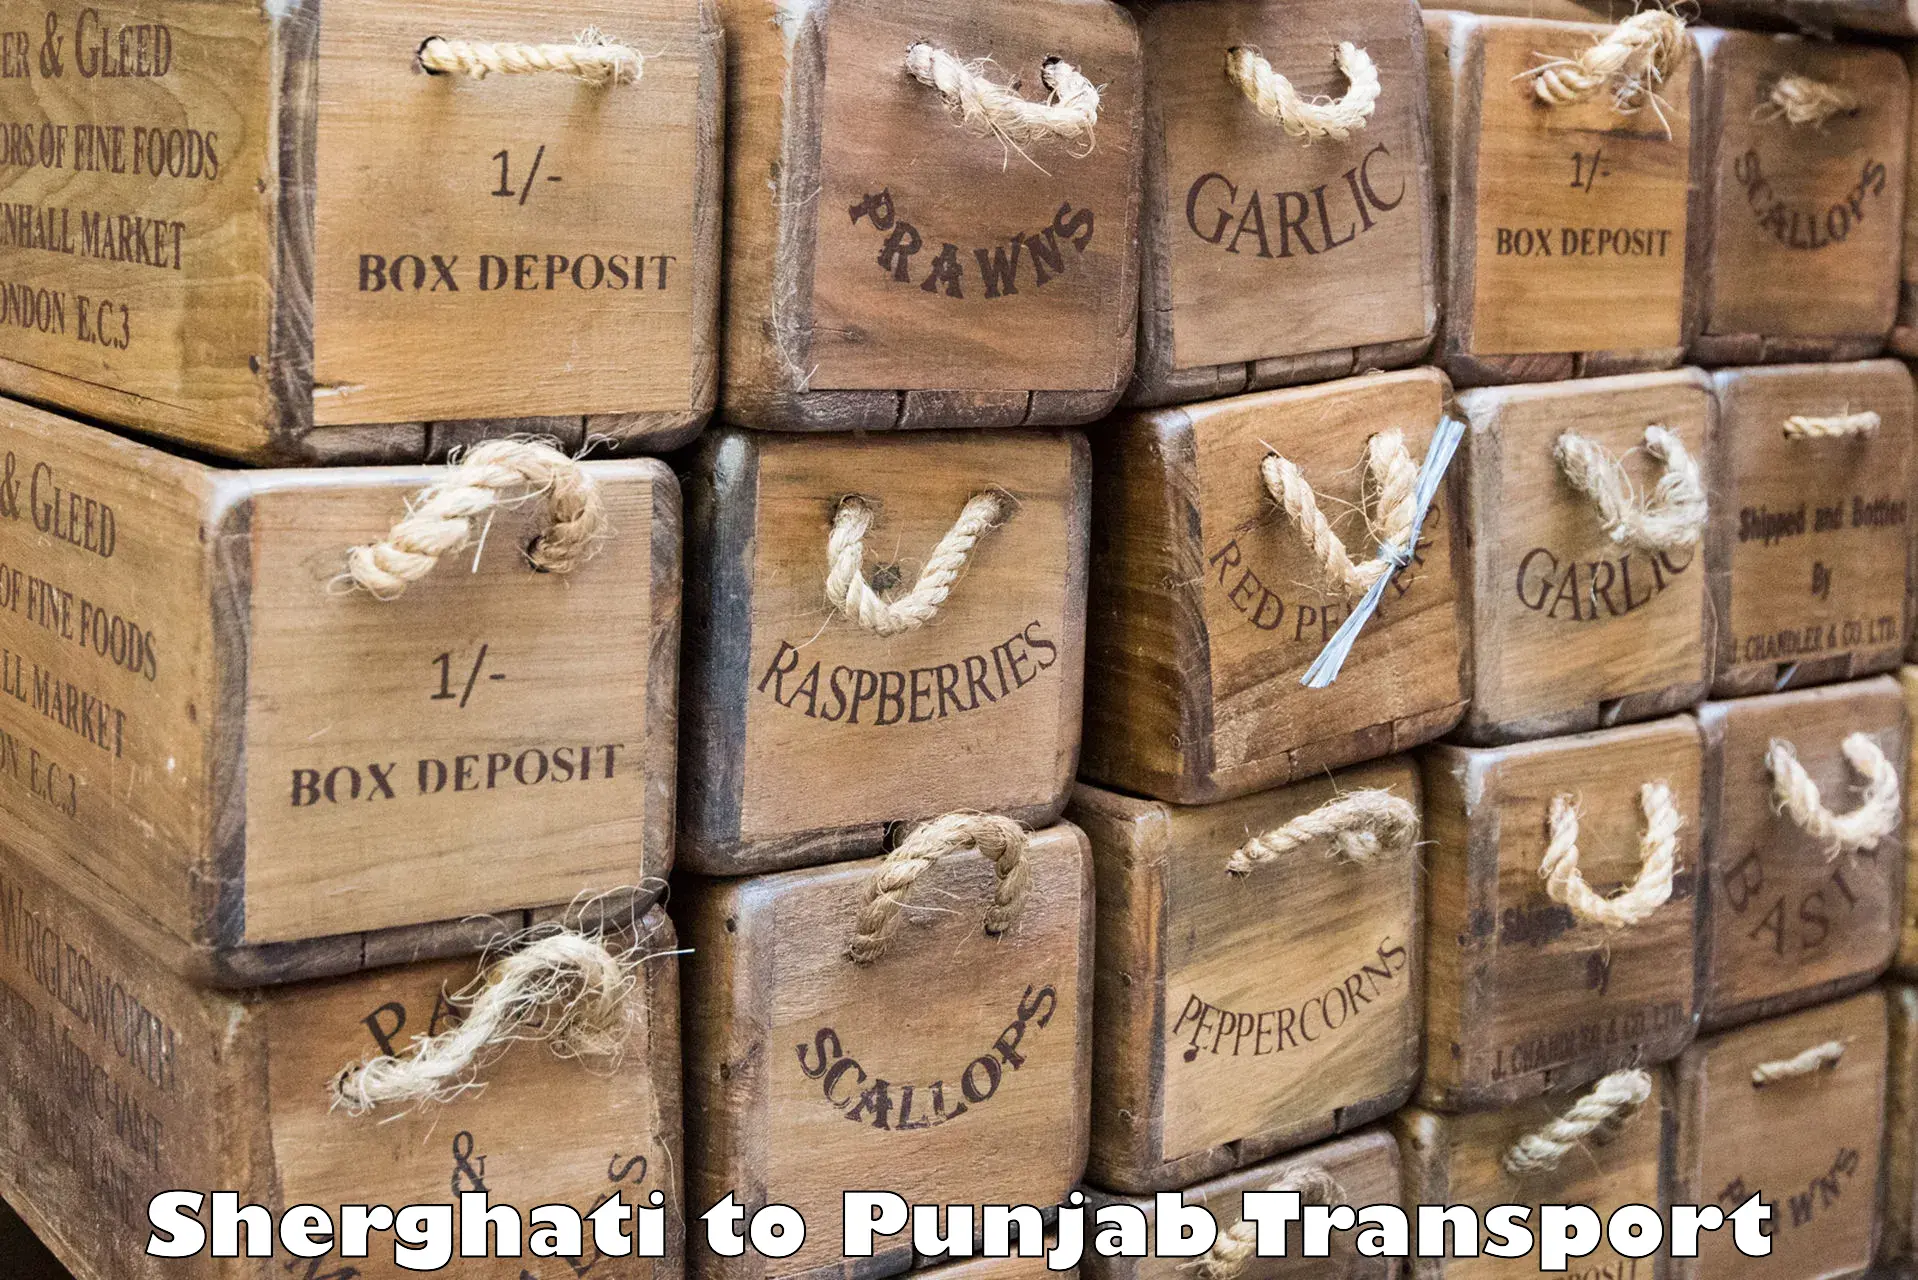 Land transport services Sherghati to Punjab